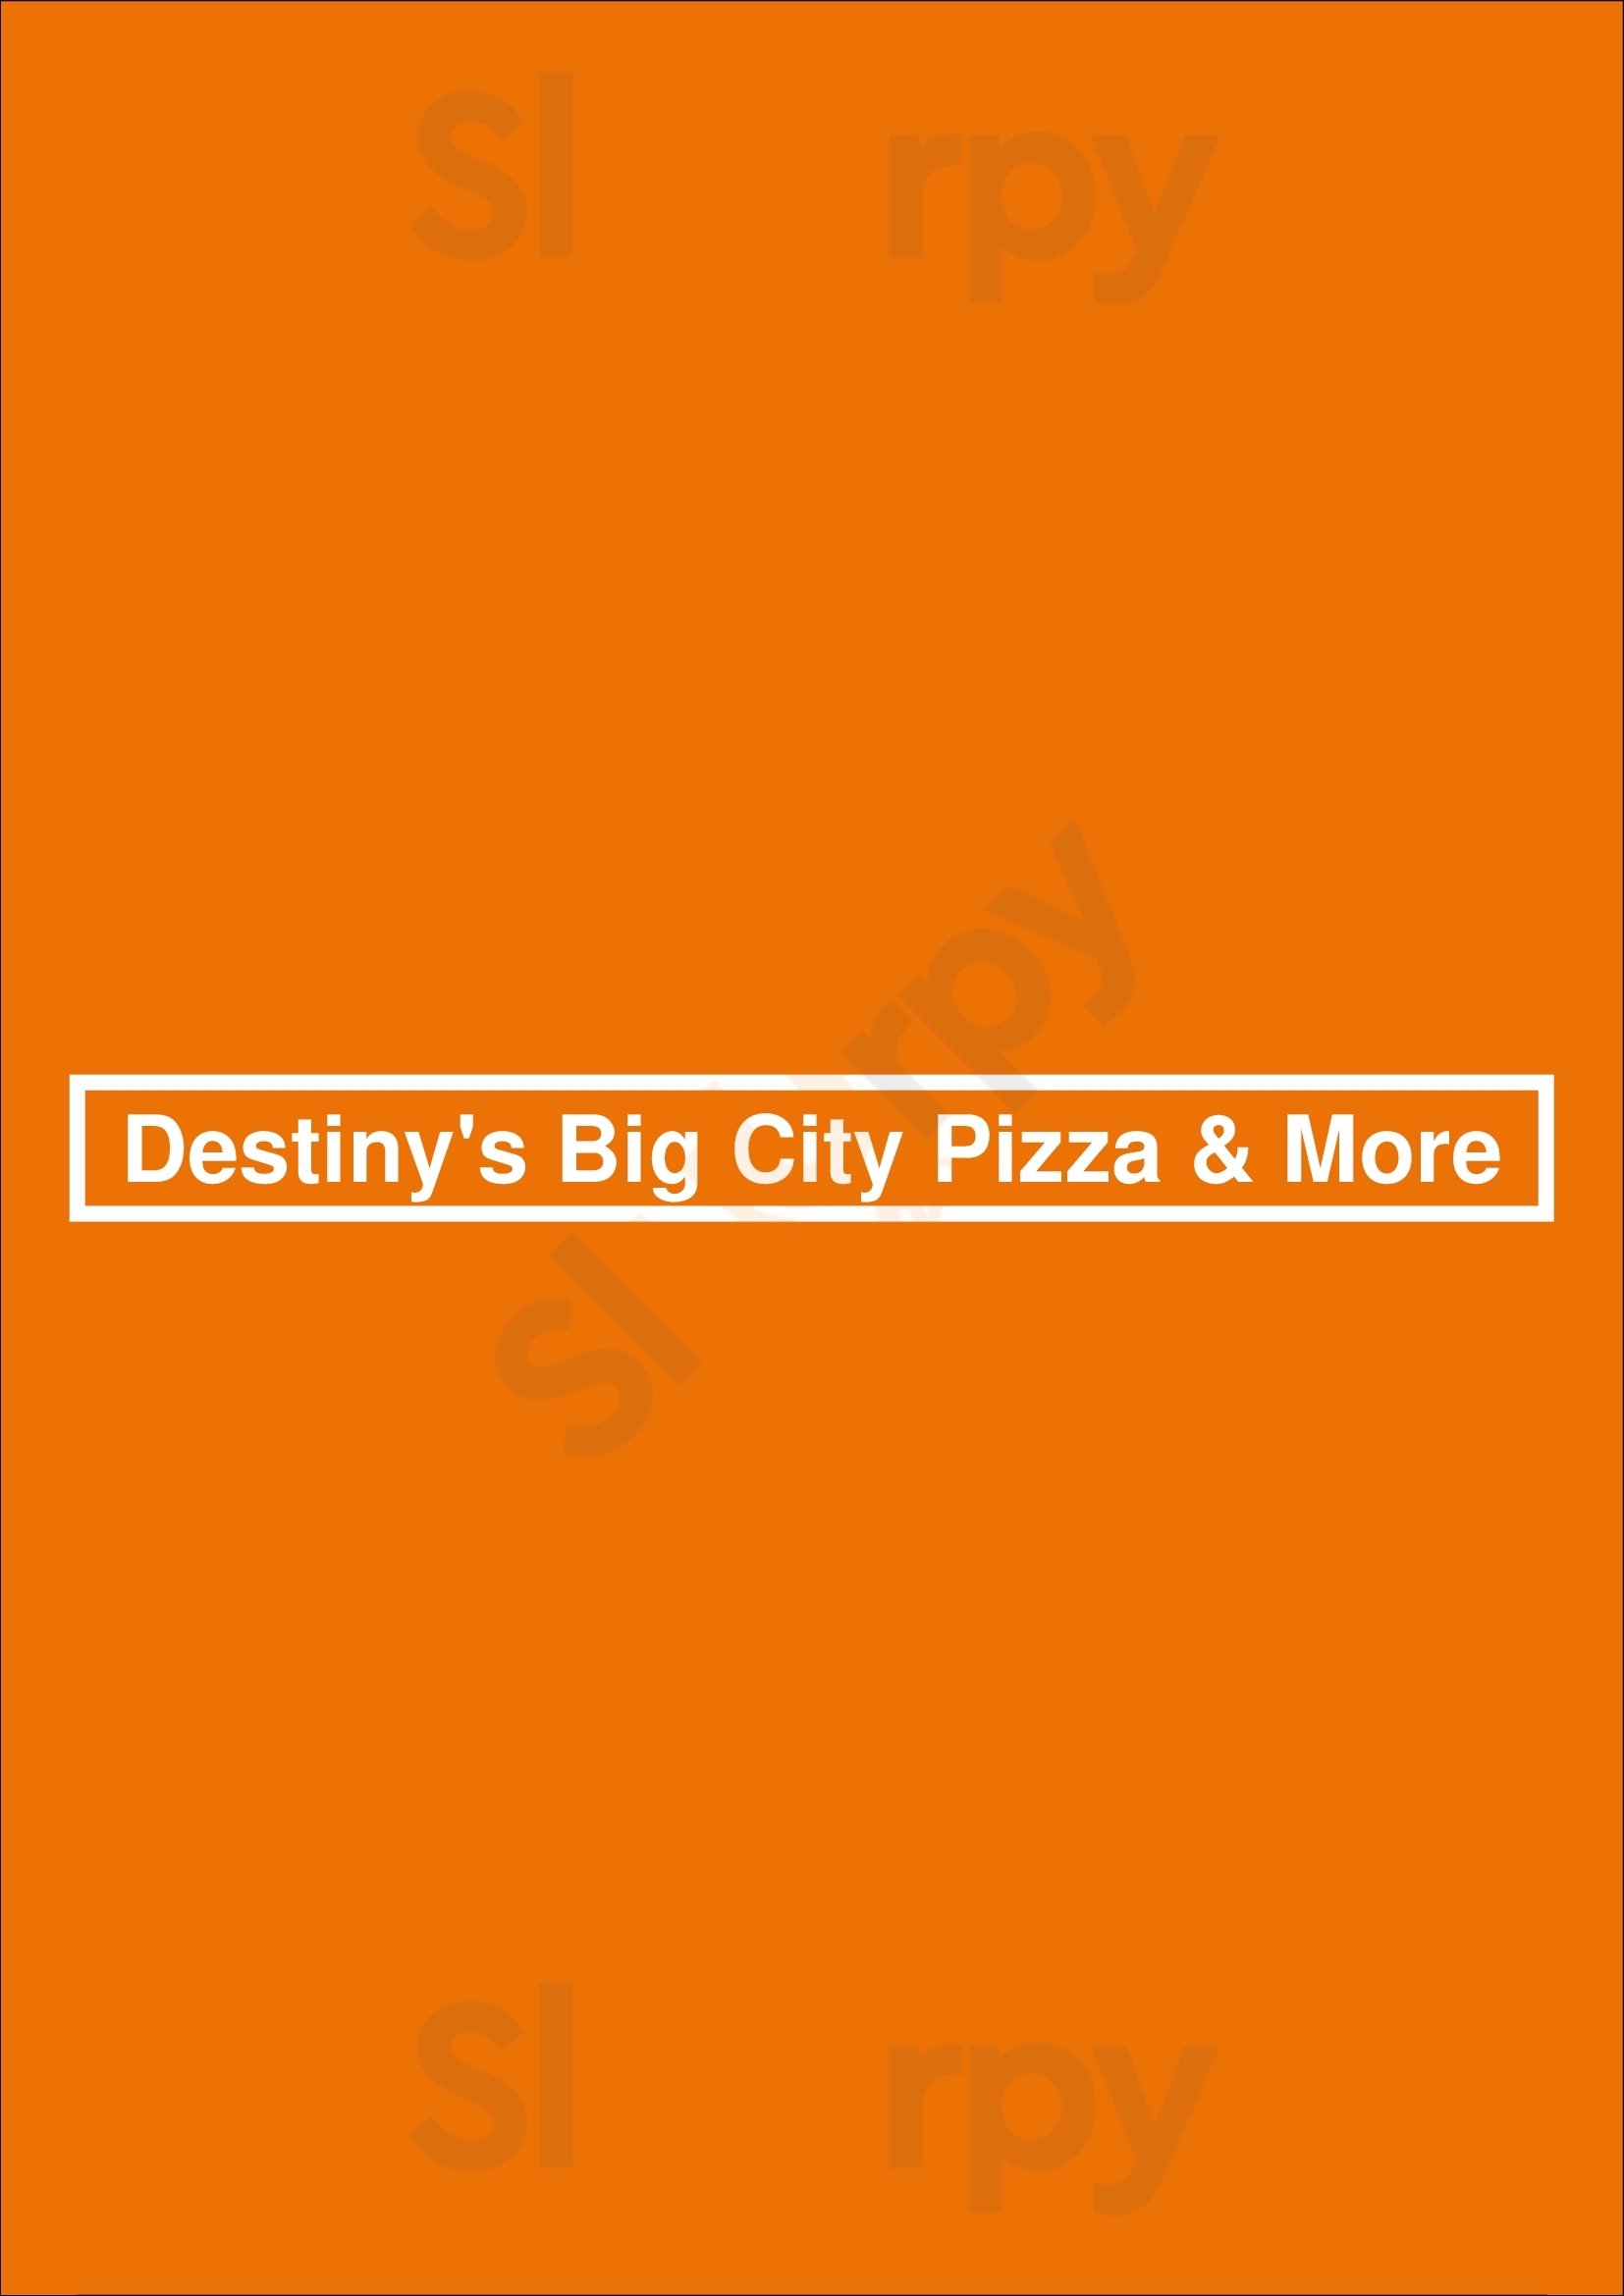 Destiny's Big City Pizza & More Winter Springs Menu - 1